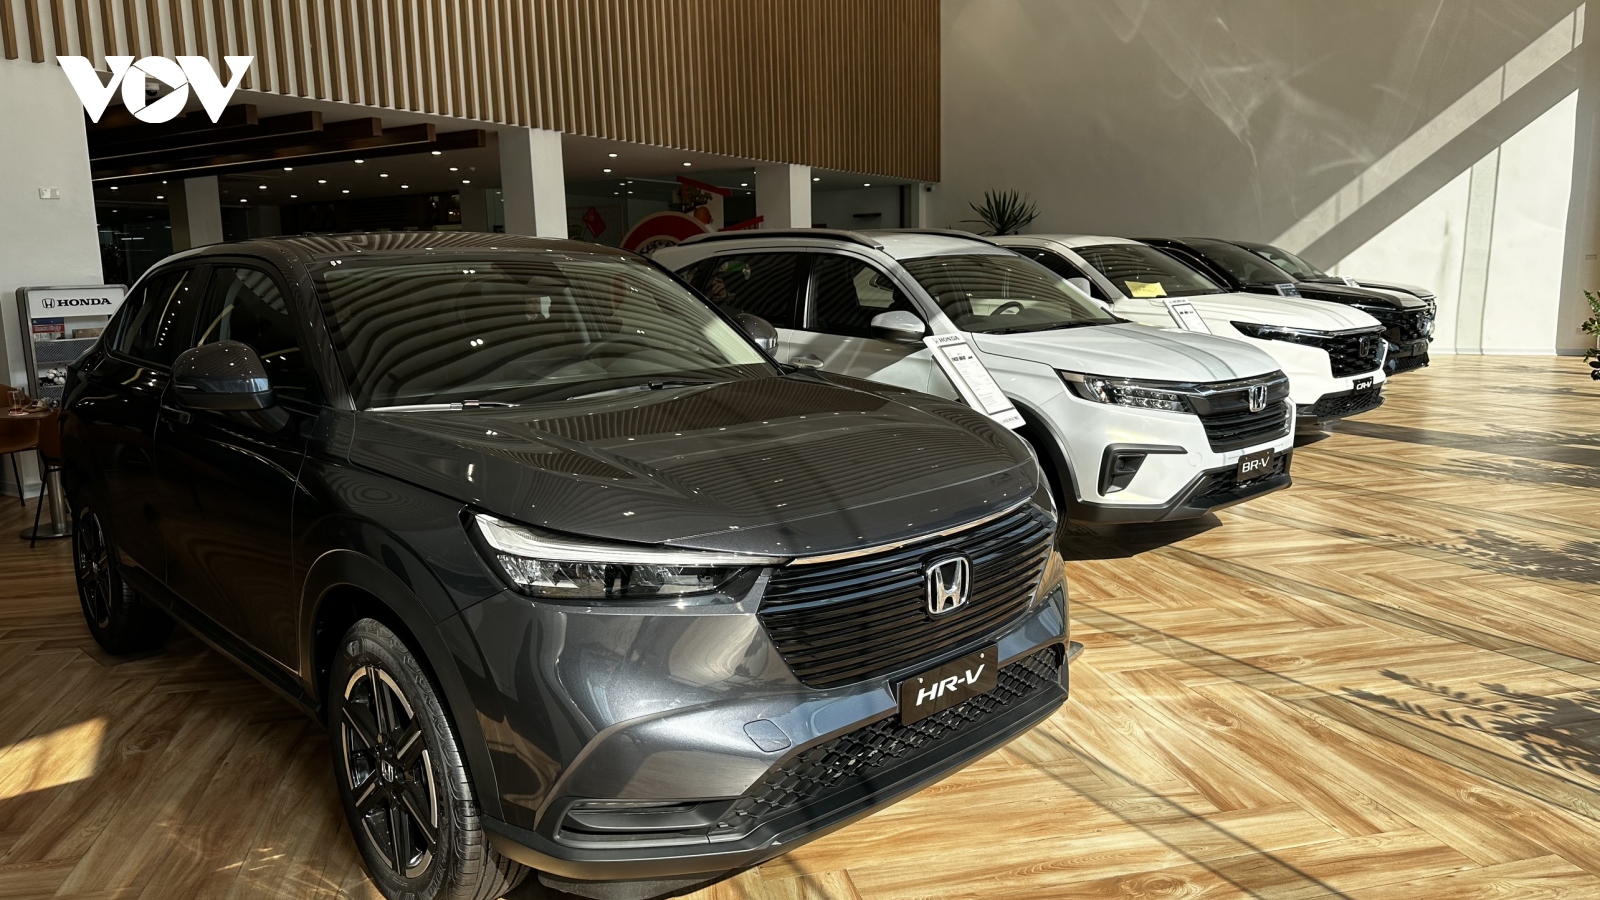 Cuối năm, Honda khan nguồn cung, muốn đặt xe ưng ý phải đợi qua Tết